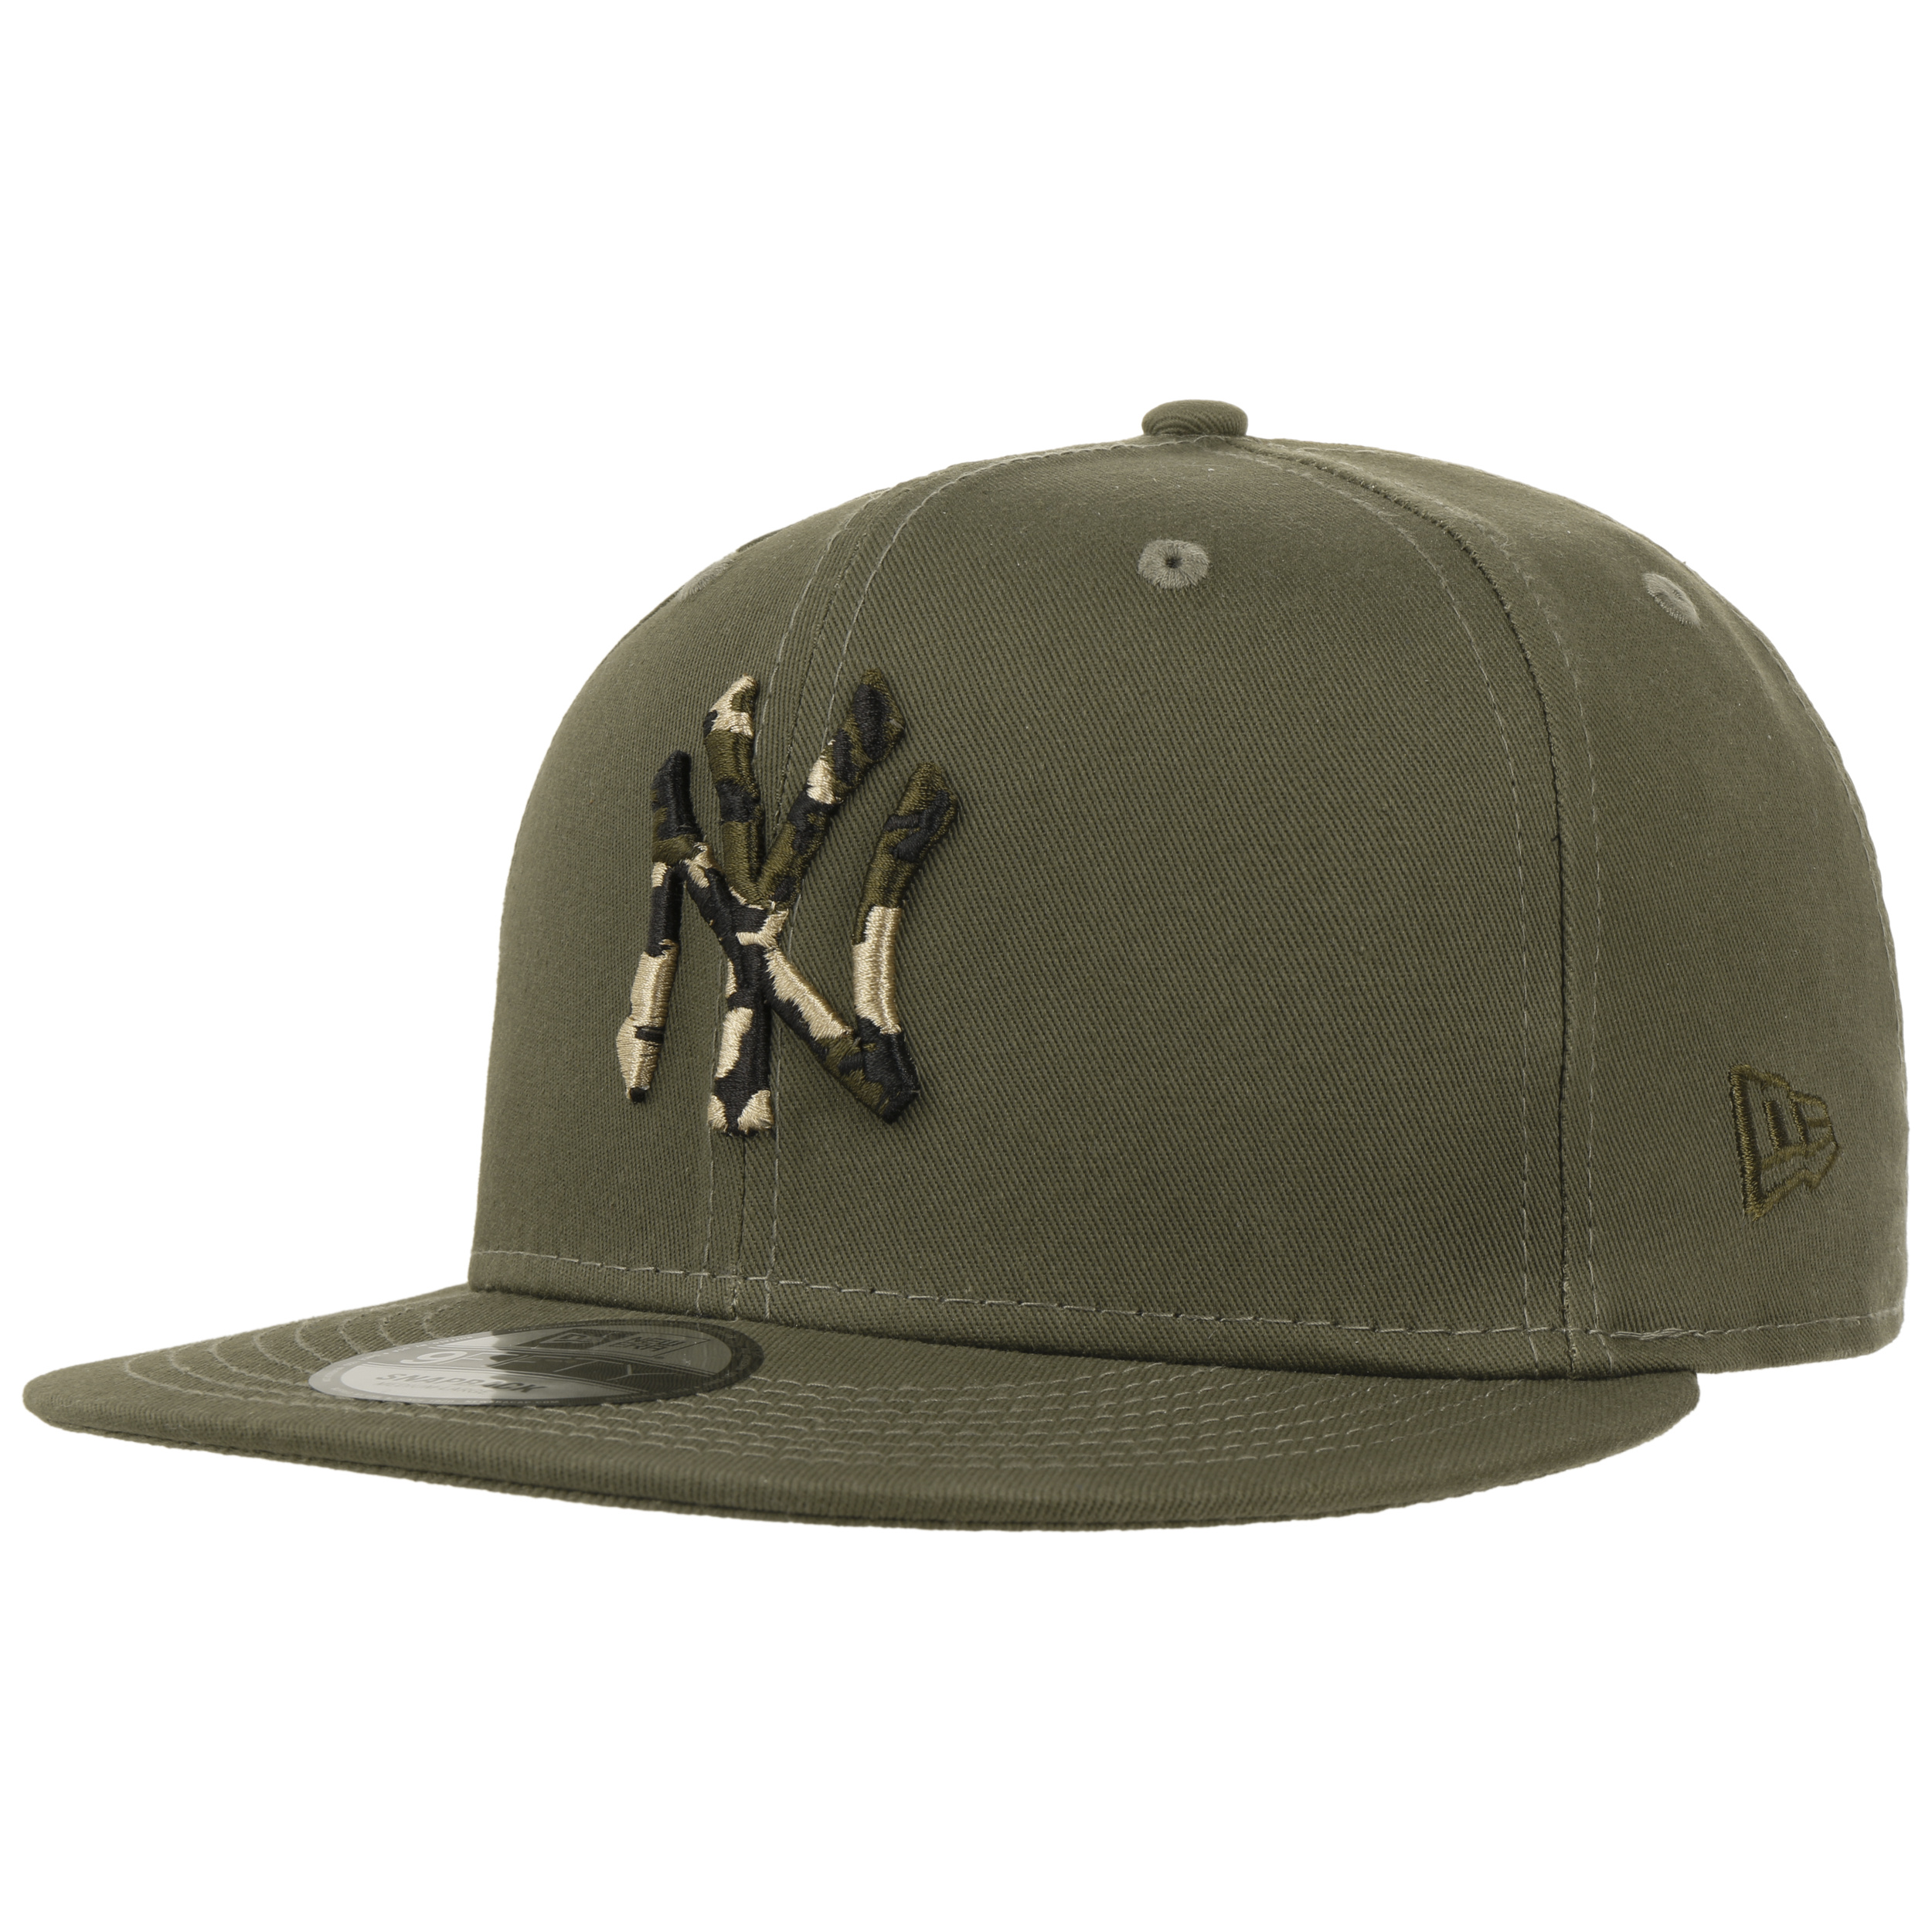 Gorra plana marrón snapback con logo marrón 9FIFTY League